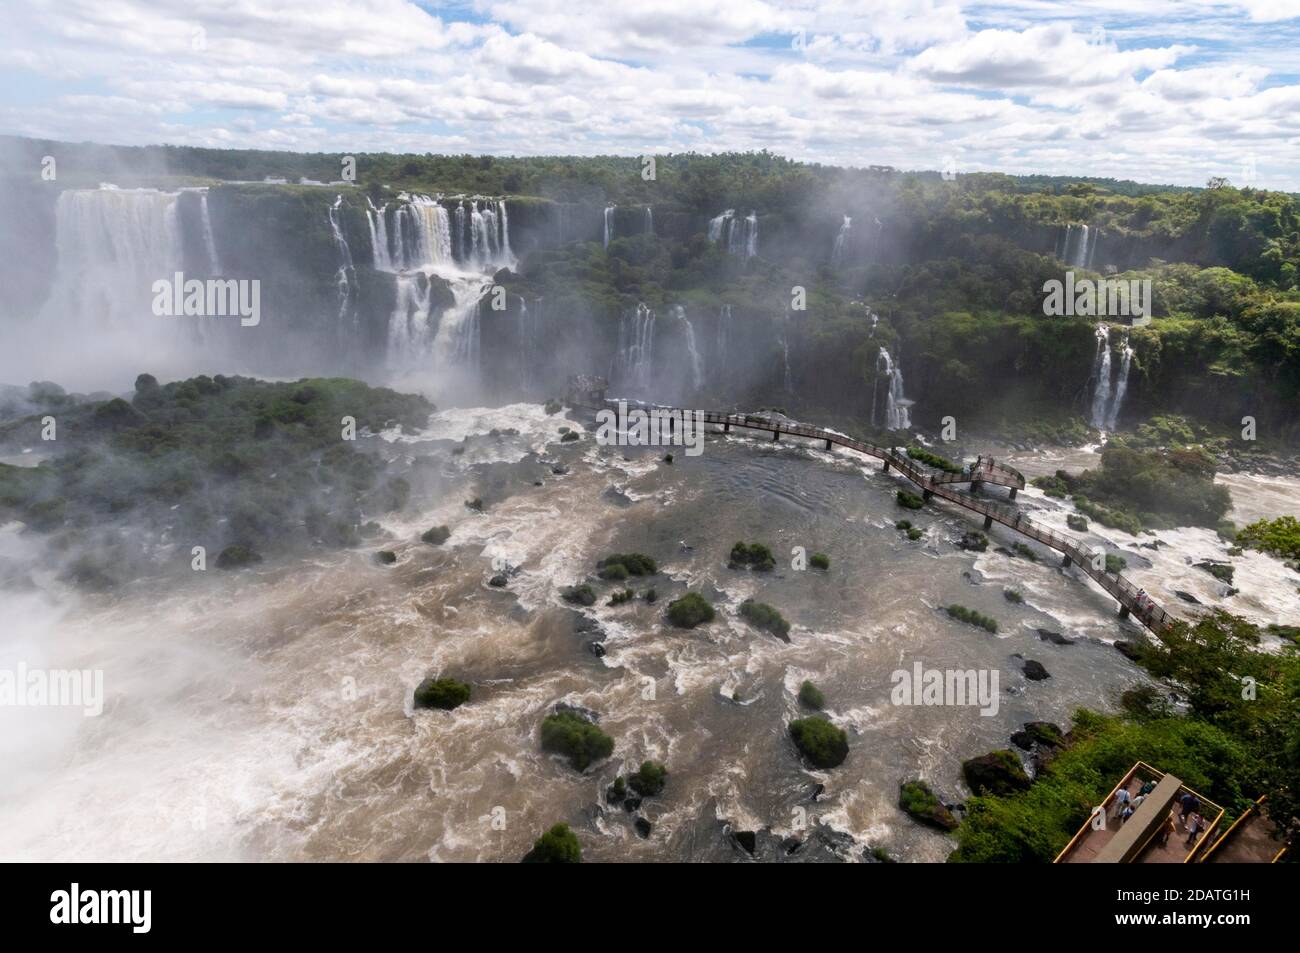 Una lunga passerella, piena di visitatori, che si estende attraverso le cascate di Iguazu nel Parco Nazionale, in Brasile. Sul lato opposto delle cascate in Argentina Foto Stock